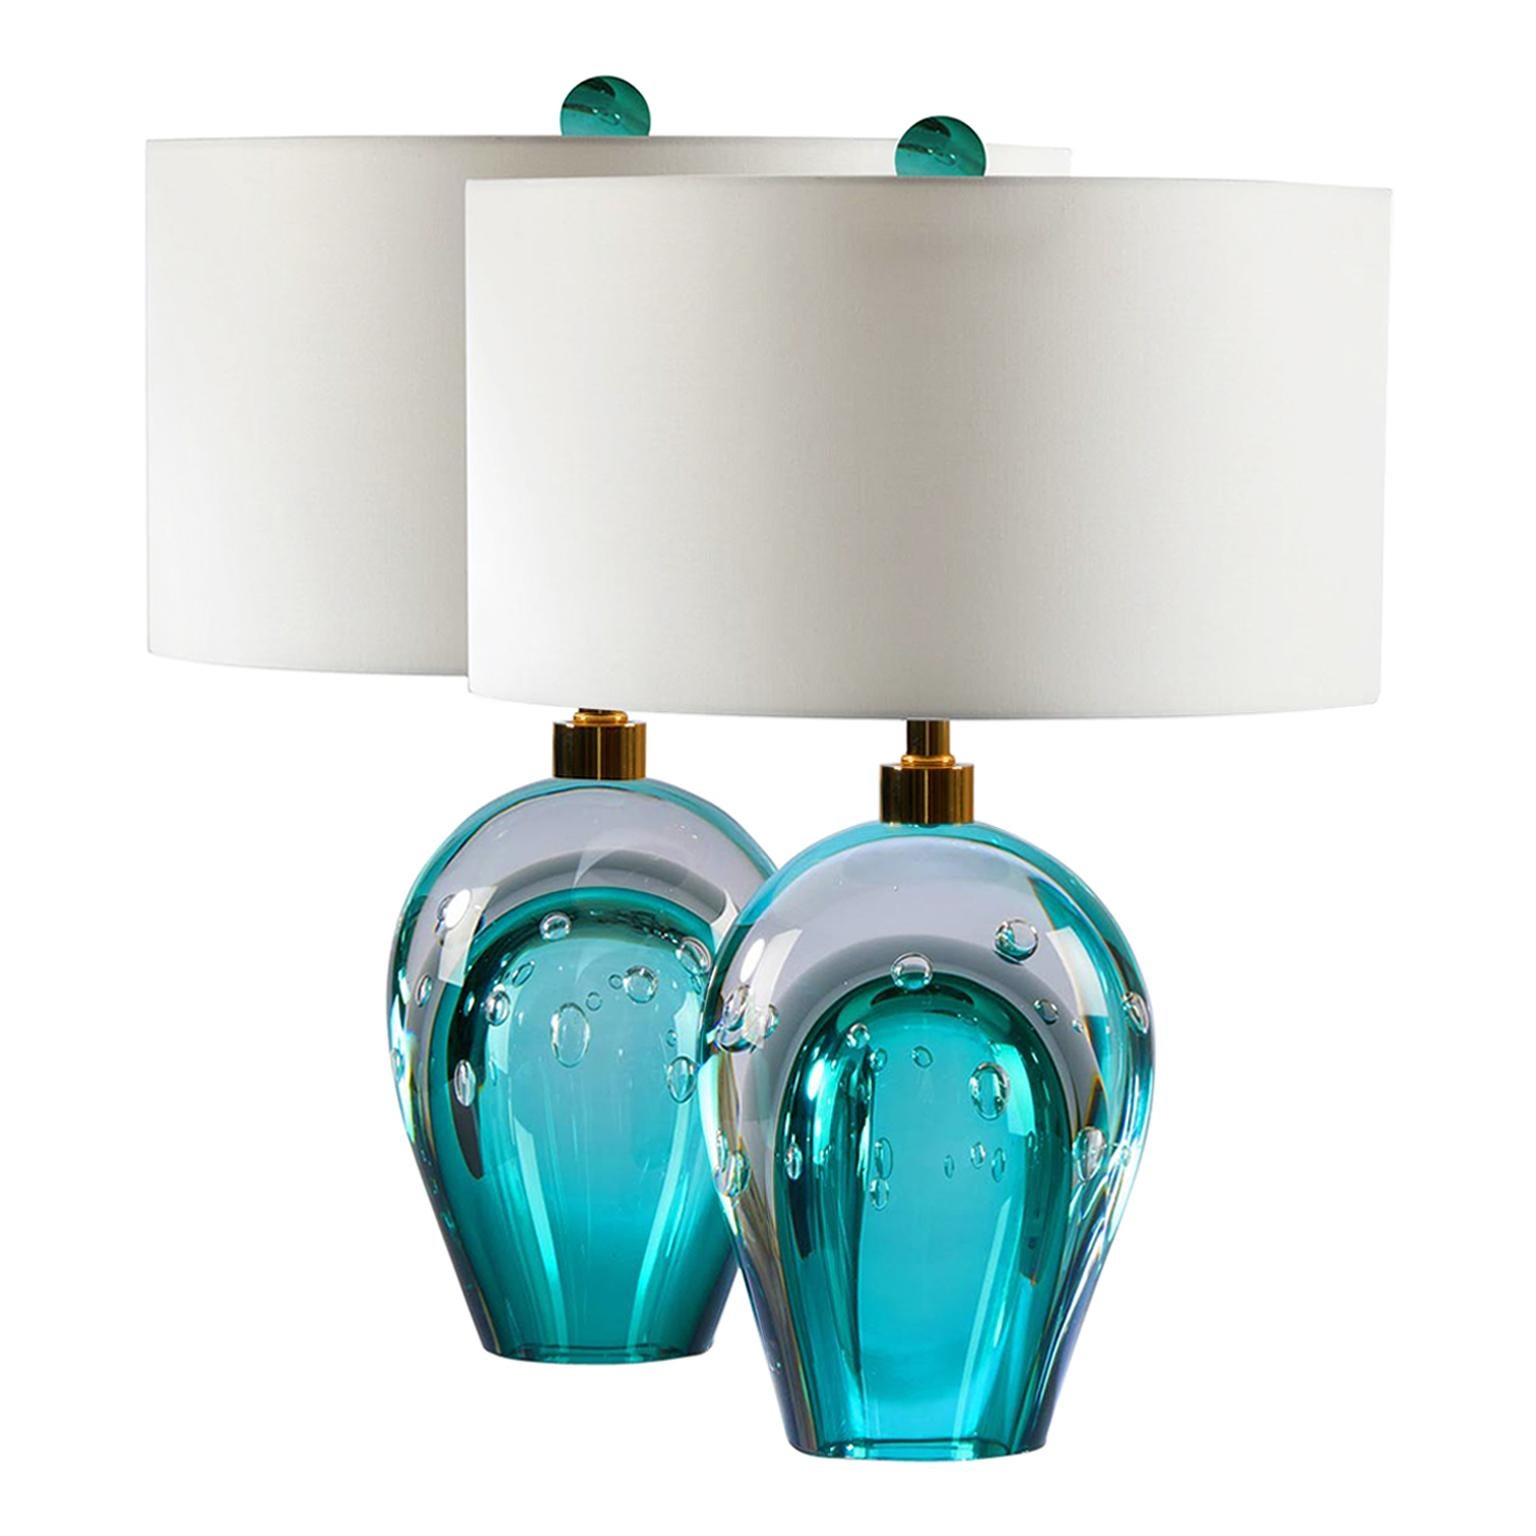 Seguso Vetri d'Arte Bolle Table Lamp Aqua, Gray, Clear, Murano Glass